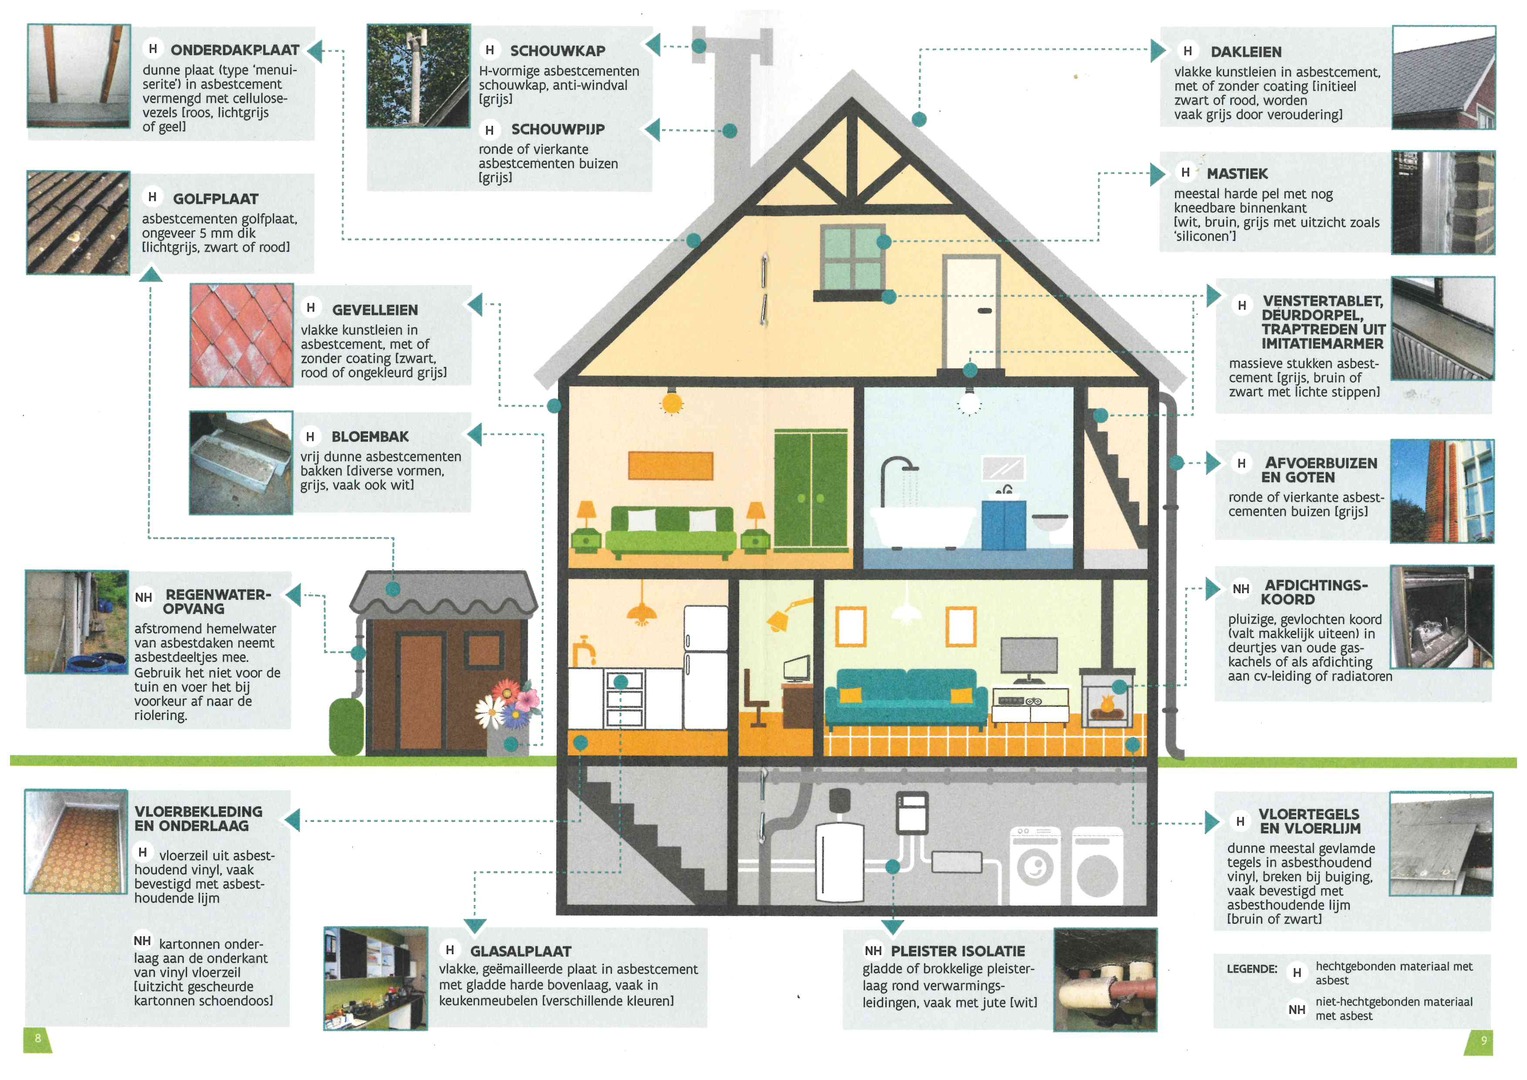 Hoe uw woning asbestveilig maken?